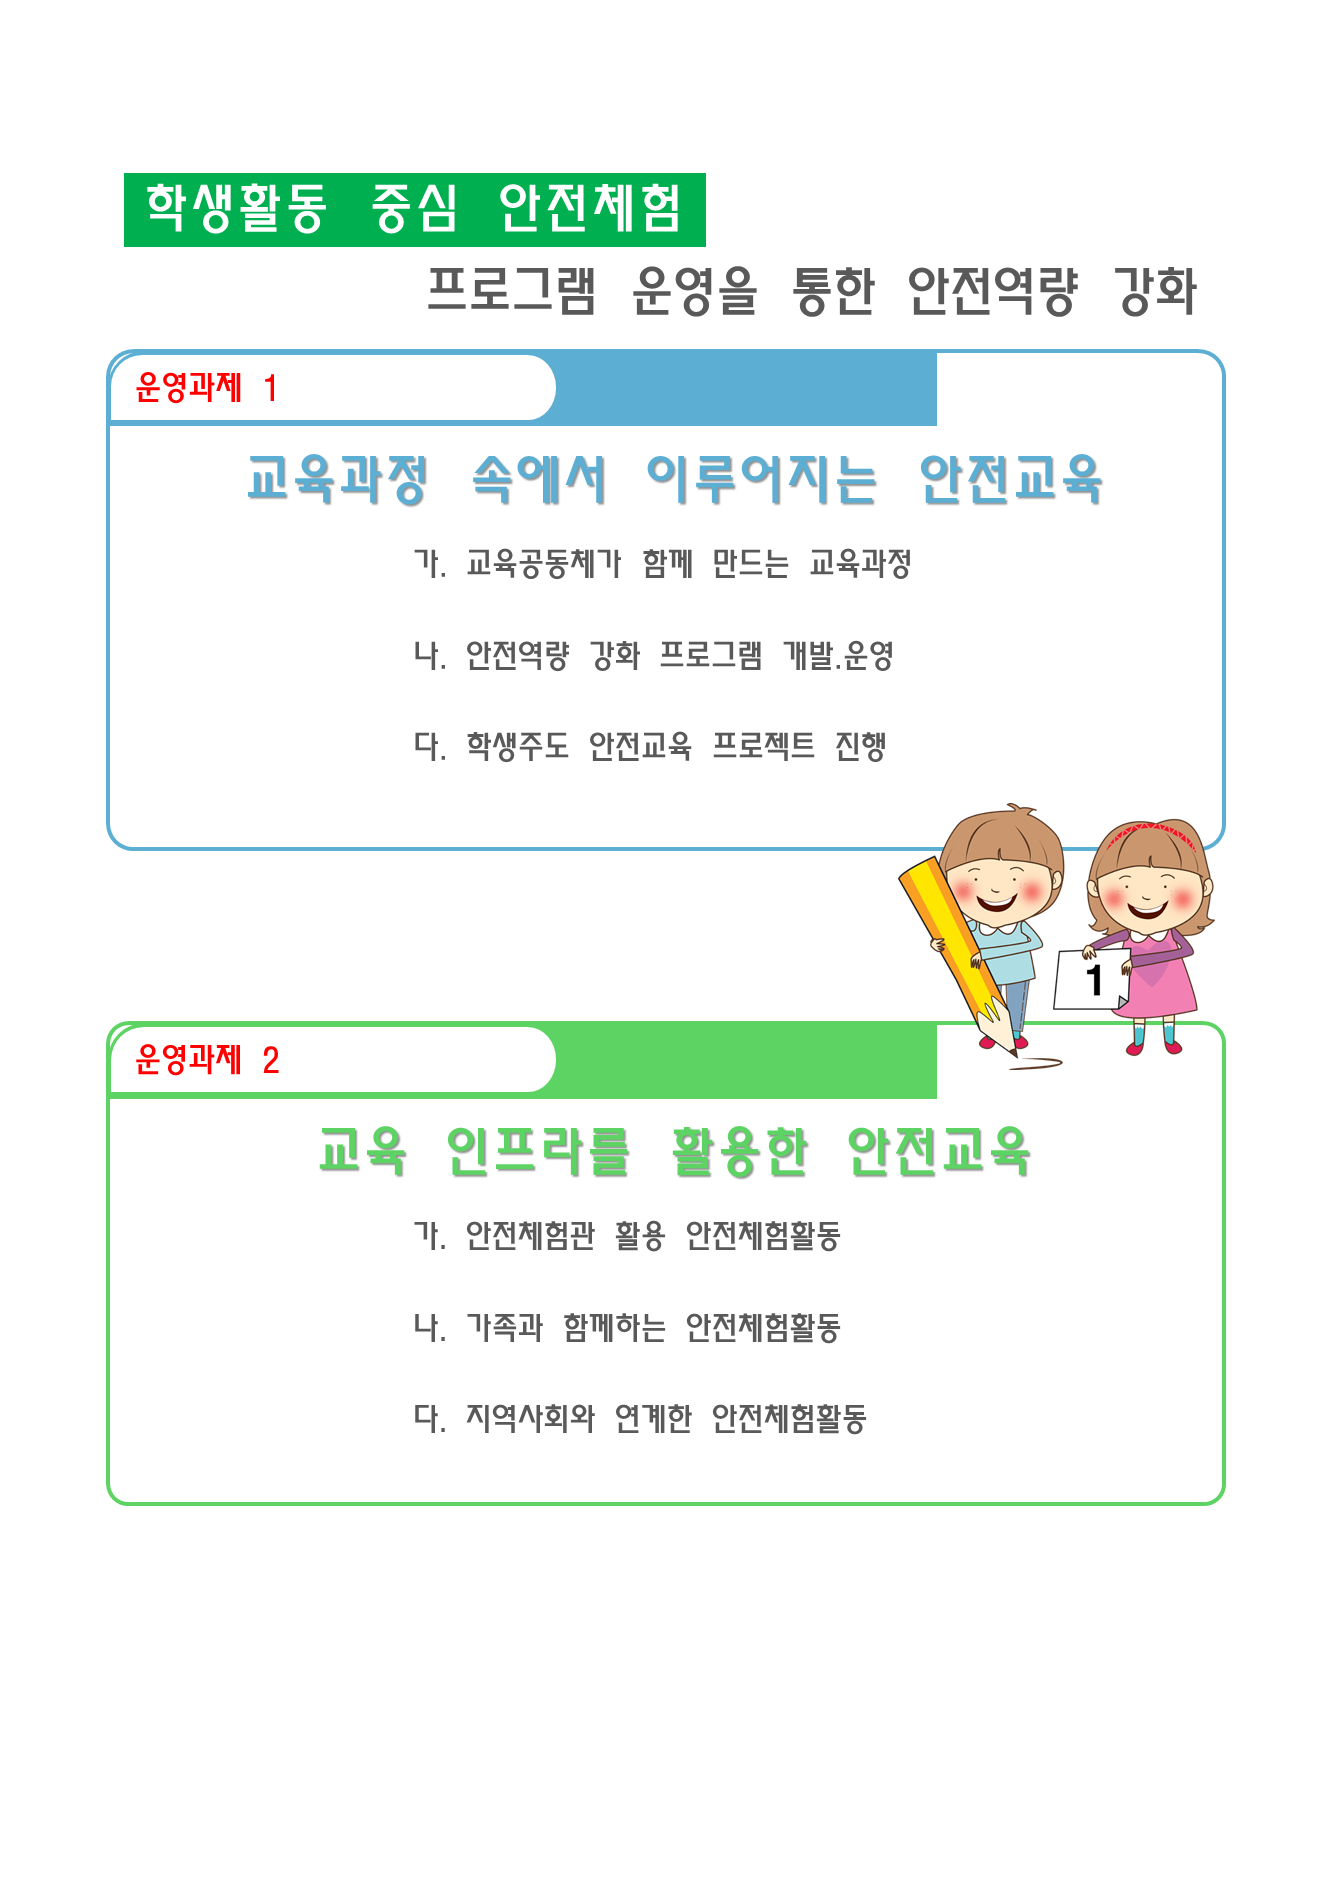 안전교육개요(홈페이지개시용)-2019년